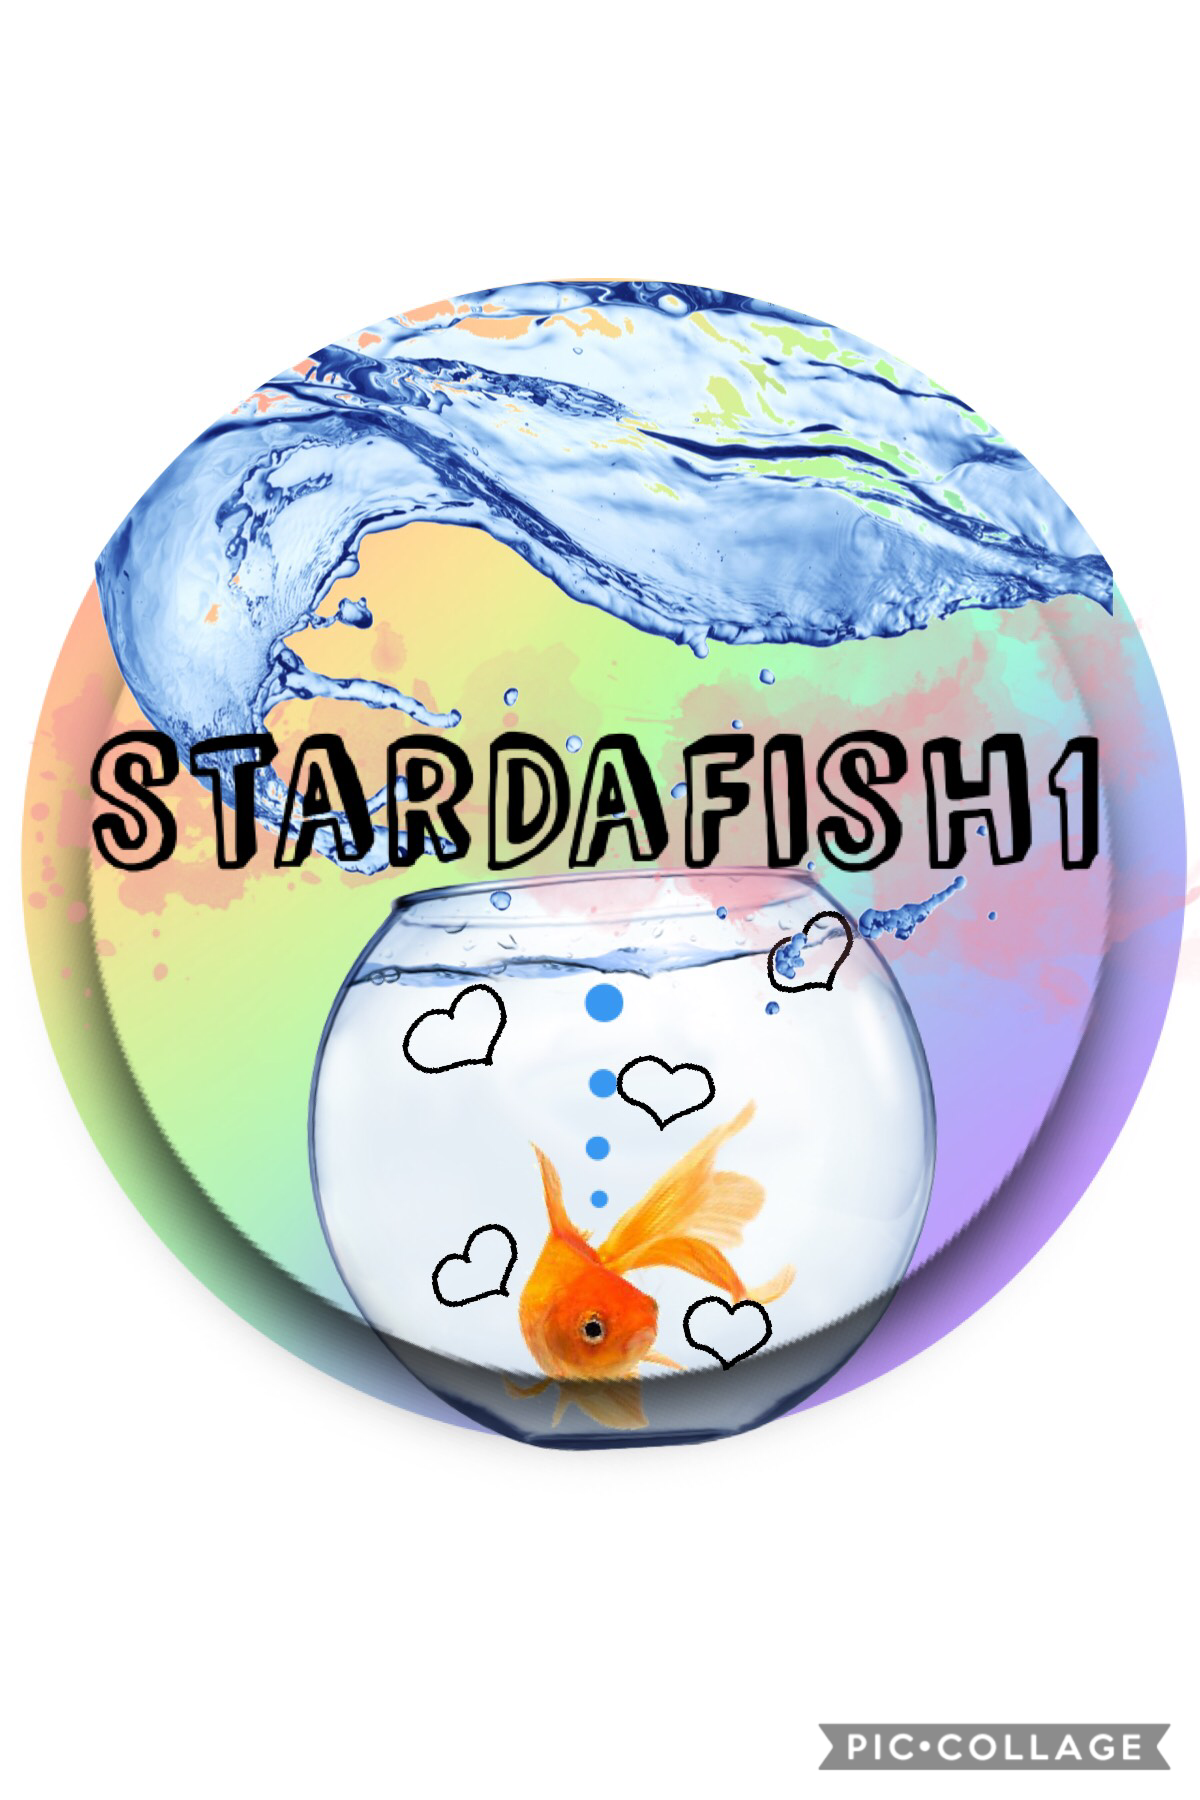 StarDaFish1 >> go follow them!!